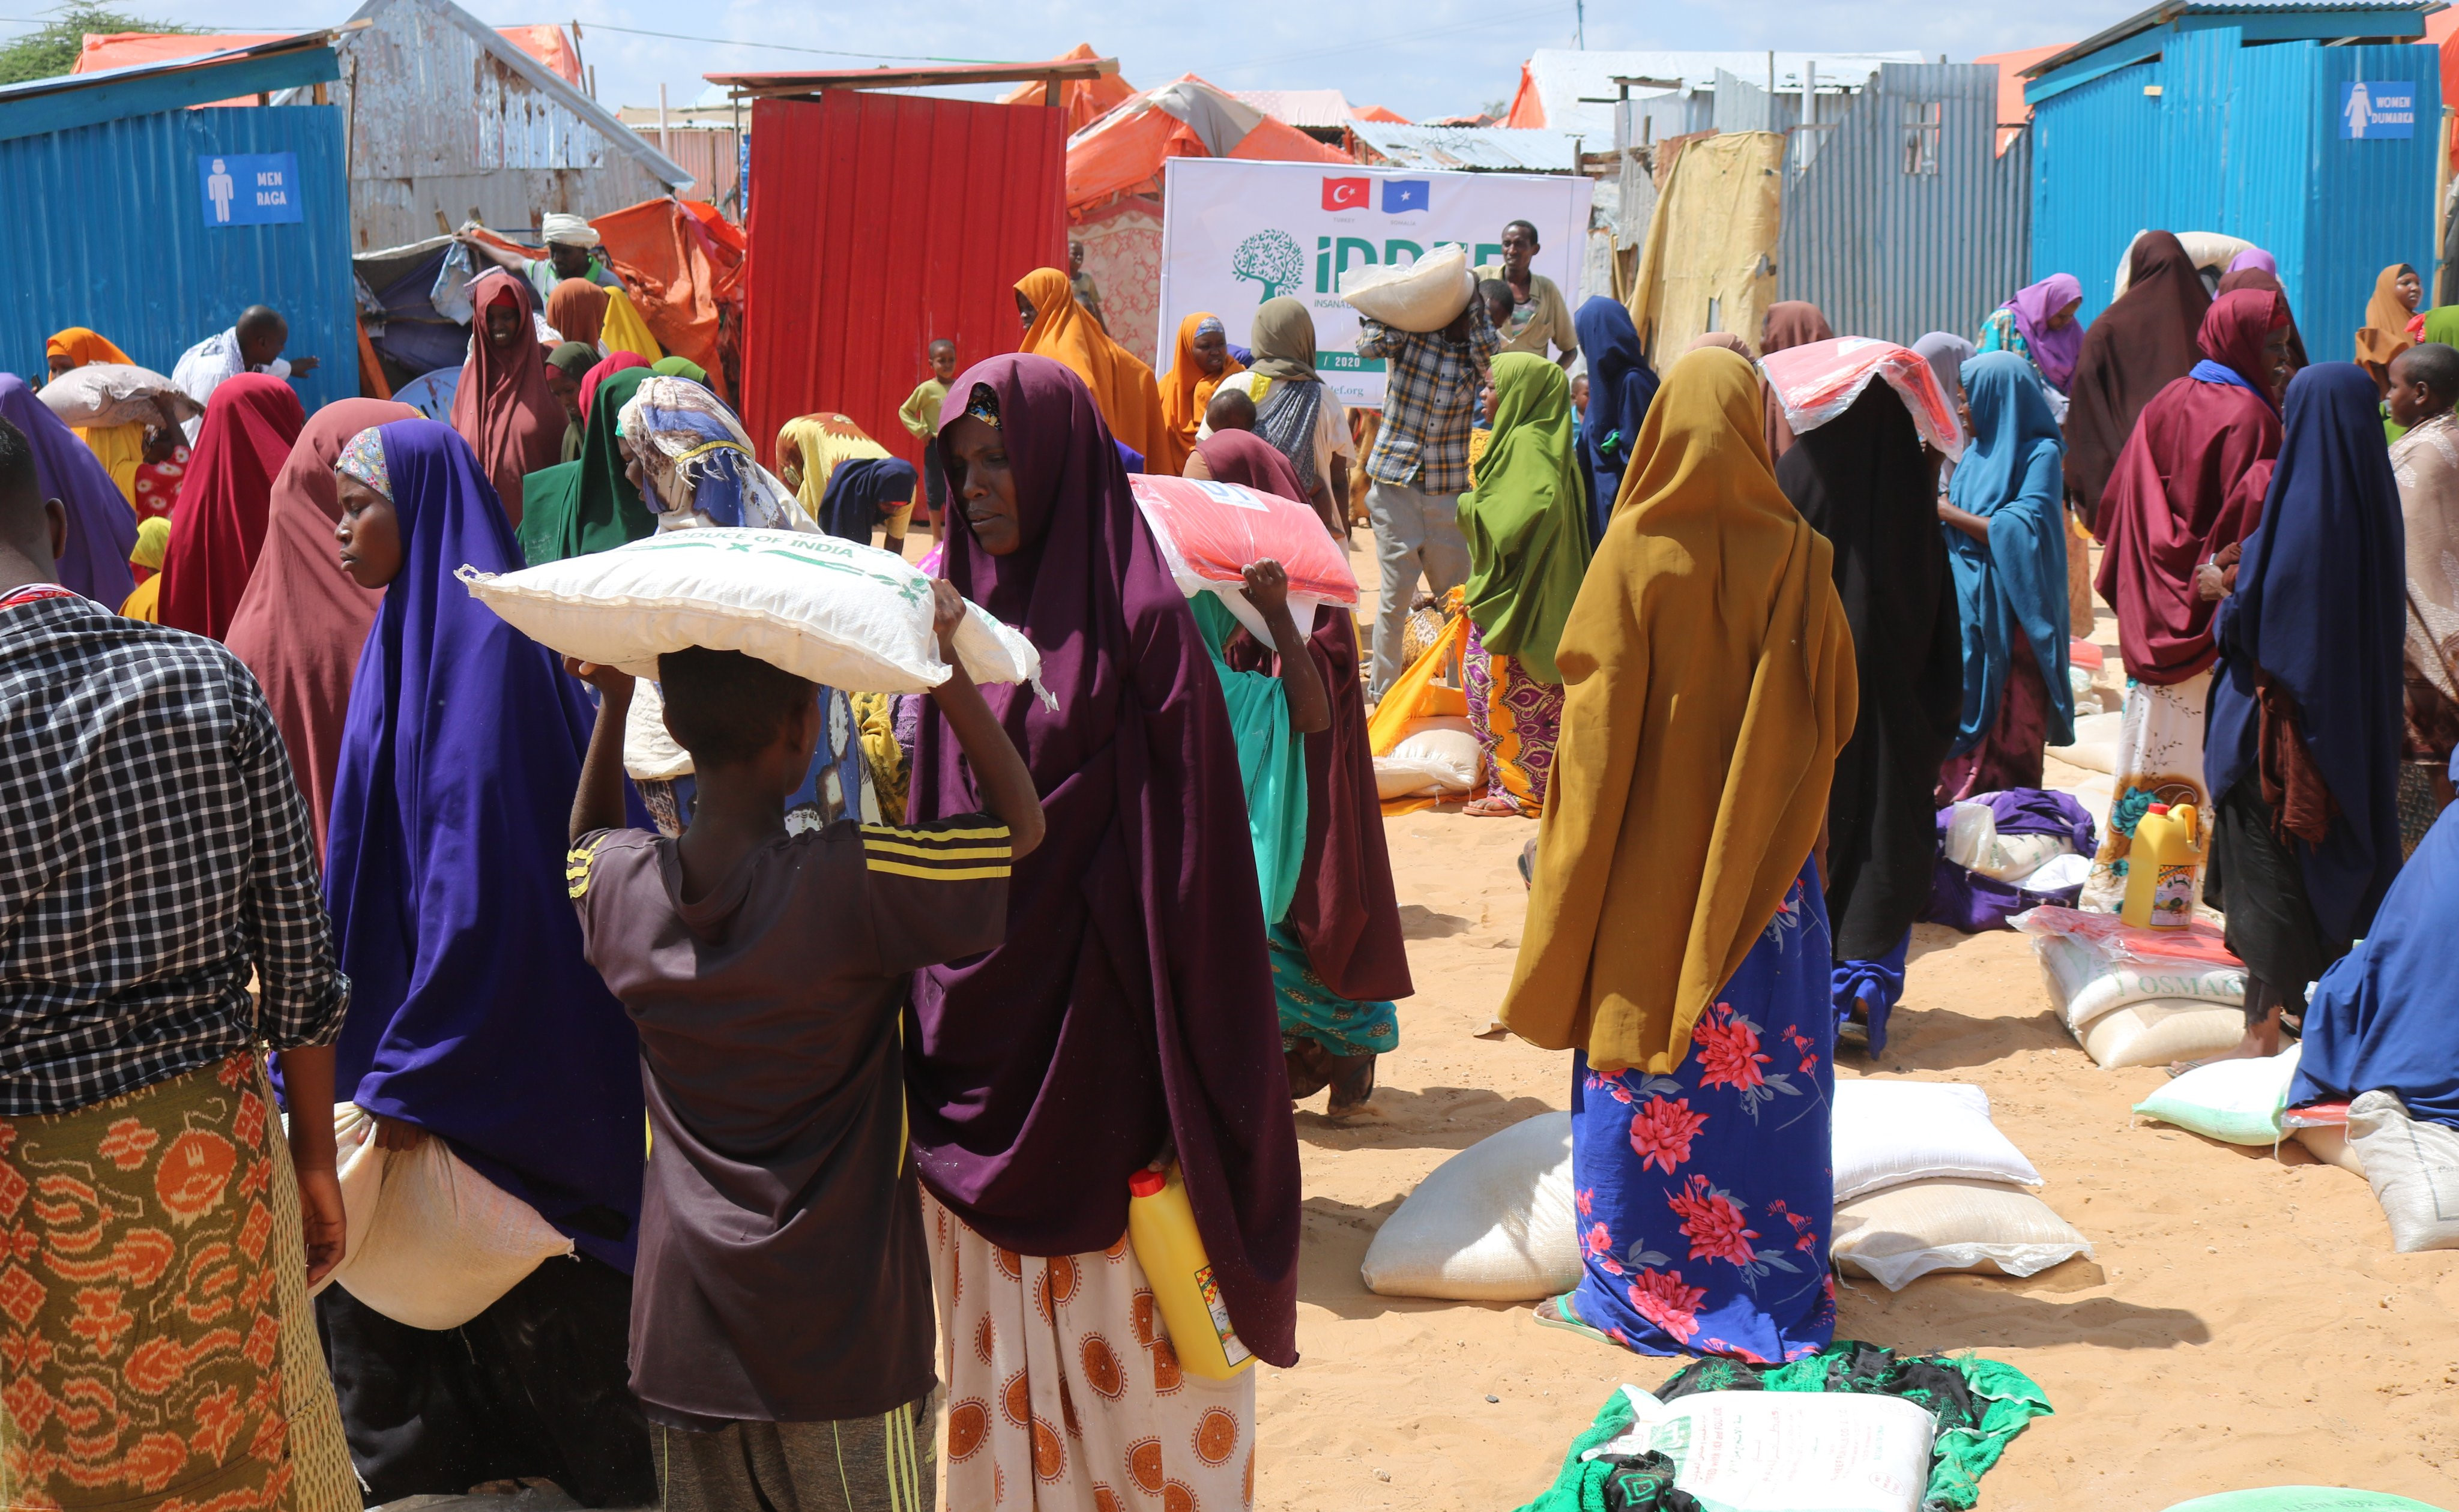 Somali’de aşırı yağmur yağışından dolayı meydana gelen sel felaketinden etkilenen mağdur ailelere, Türk hayırseverlerin desteğiyle yardım eli uzatıldı.